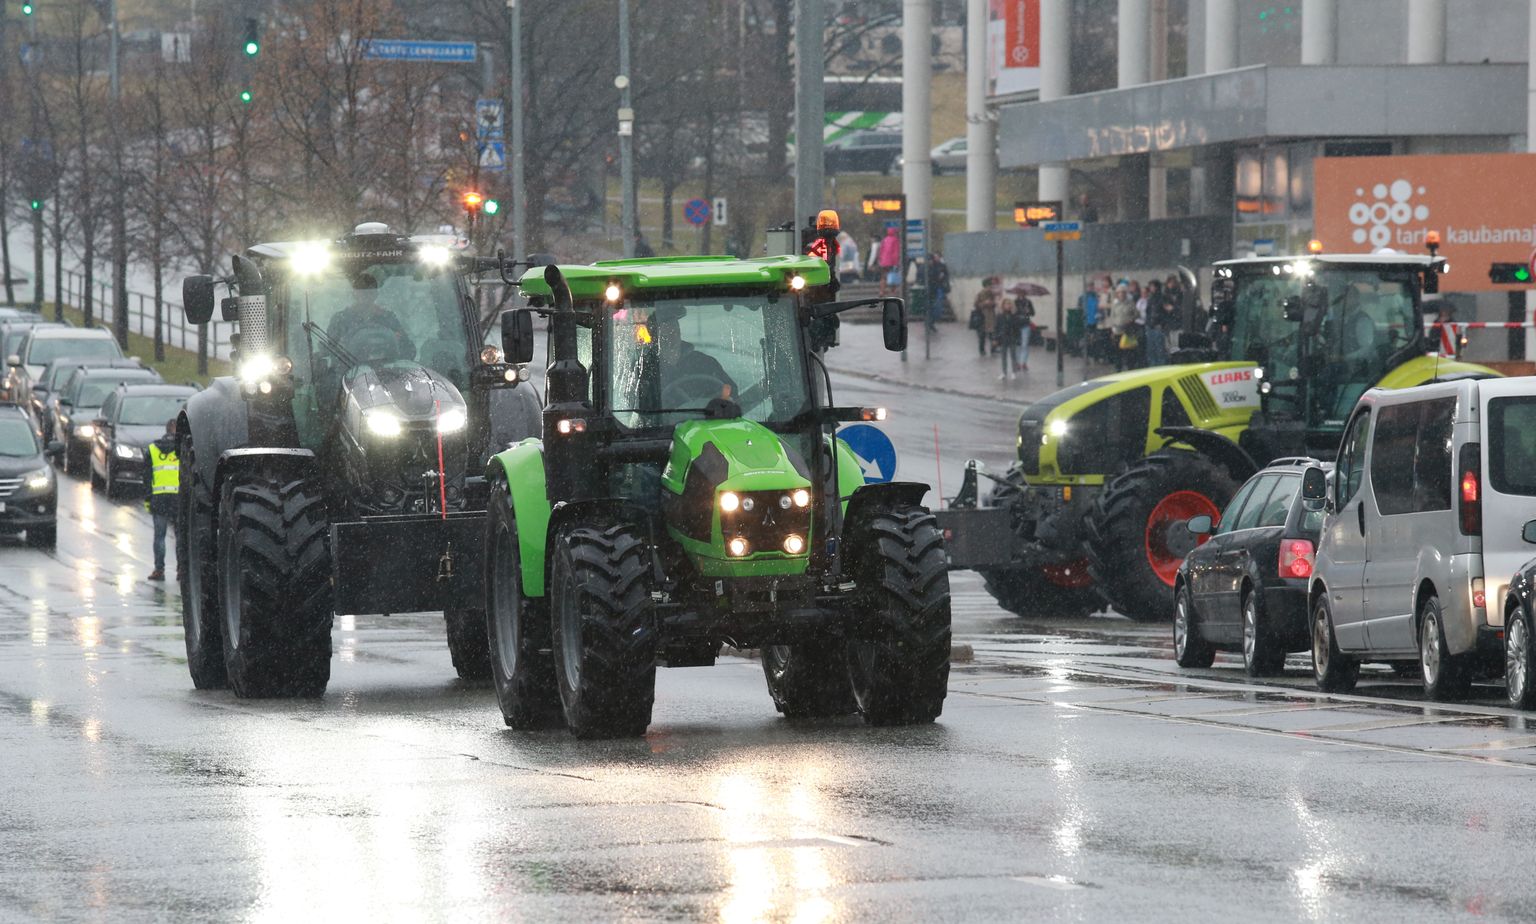 Traktorite müük kasvaas mullusega võrreldes rohkem kui veerandi võrra.